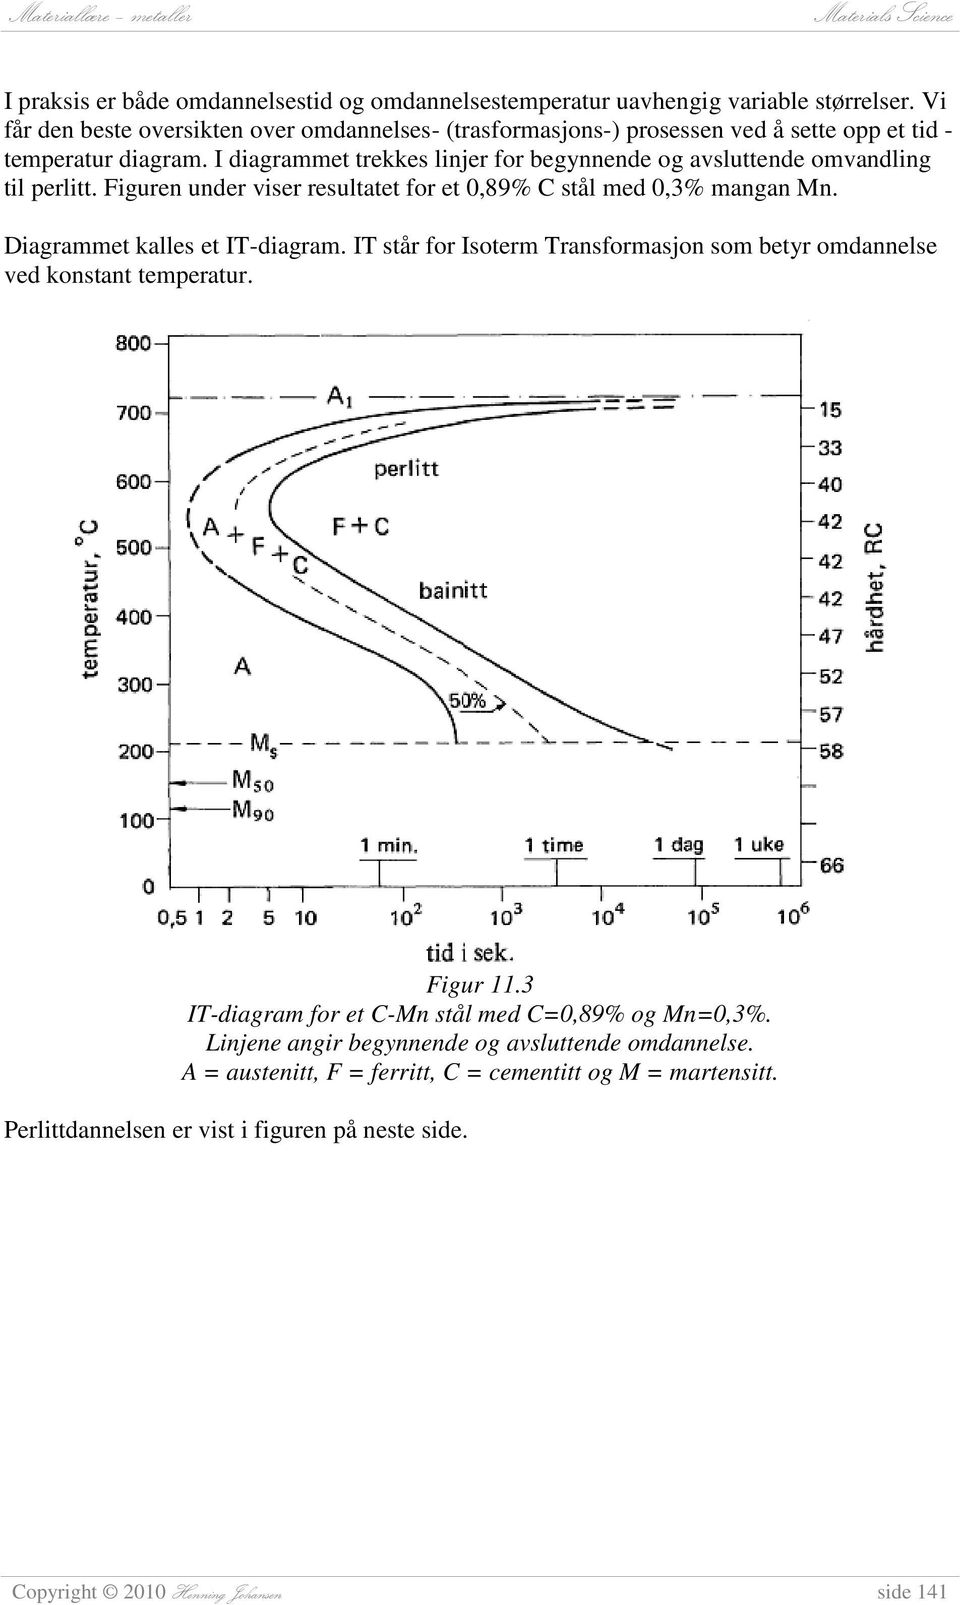 I diagrammet trekkes linjer for begynnende og avsluttende omvandling til perlitt. Figuren under viser resultatet for et 0,89% C stål med 0,3% mangan Mn. Diagrammet kalles et IT-diagram.